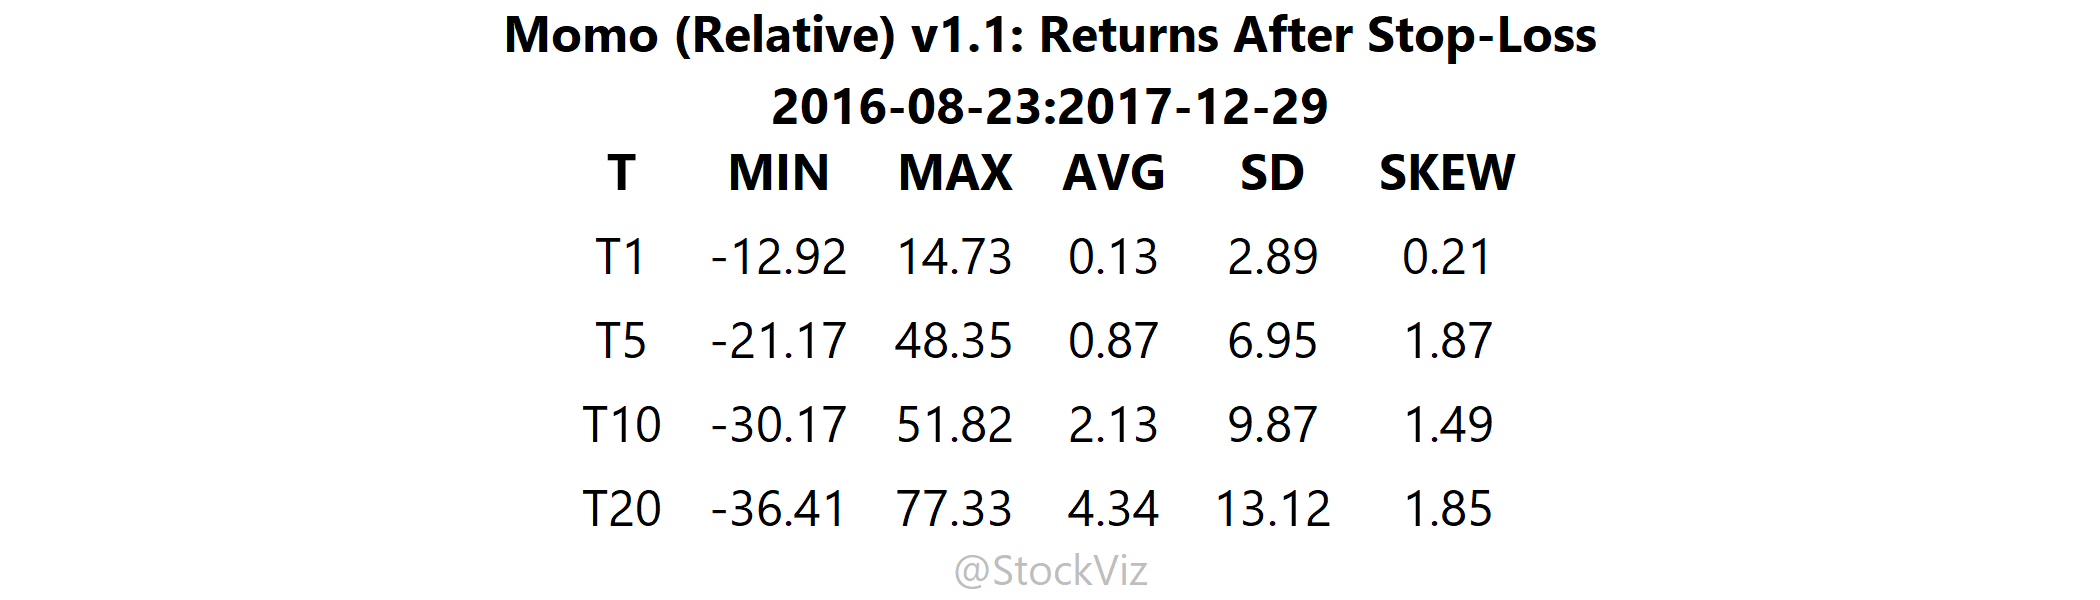 Momo (Relative) v1.1.density-table.2016-08-23.2017-12-29